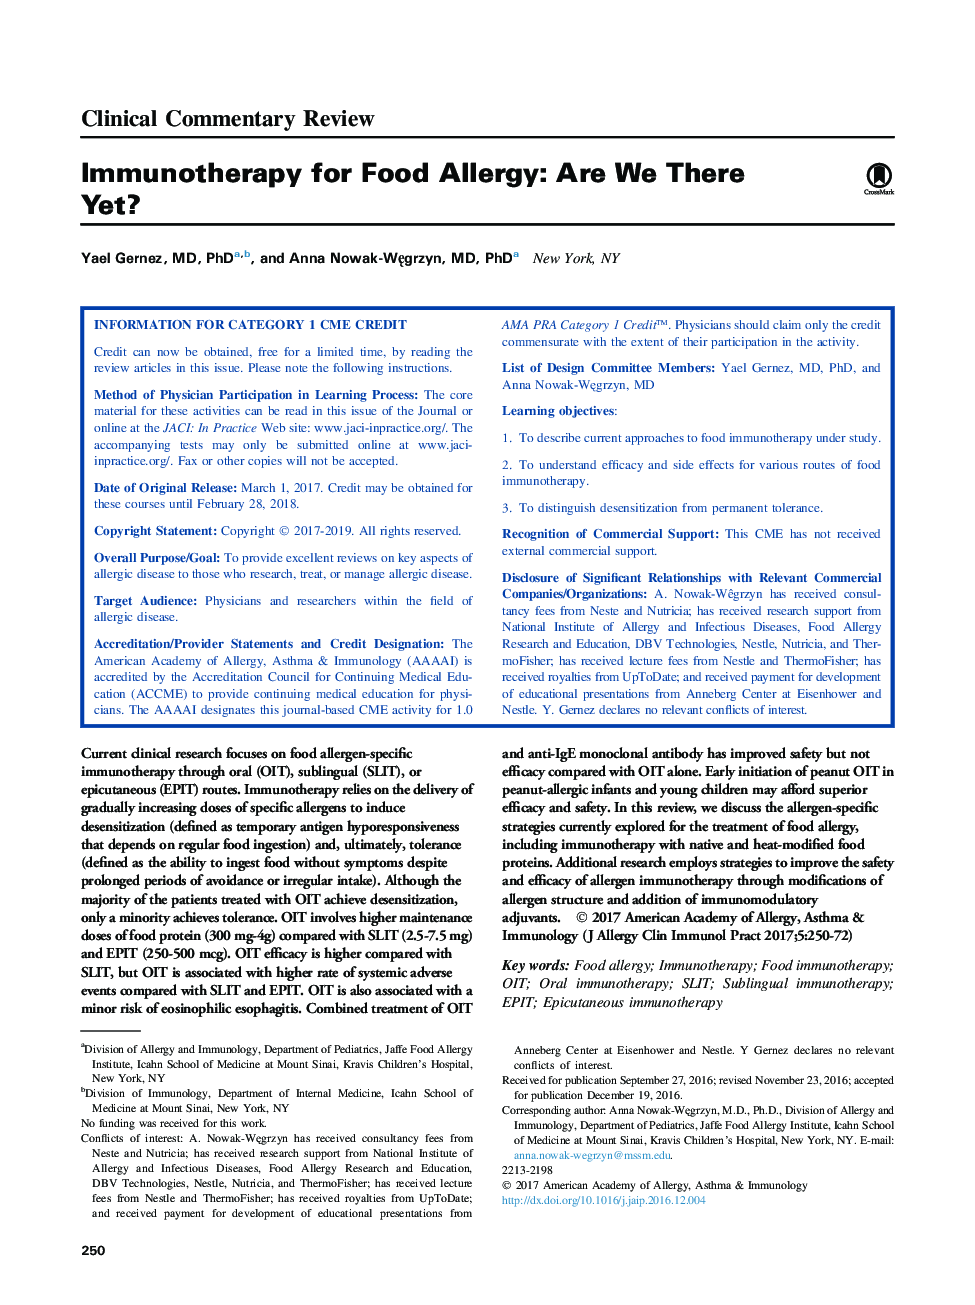 ایمونوتراپی برای آلرژی غذایی: هنوز وجود دارد؟ 